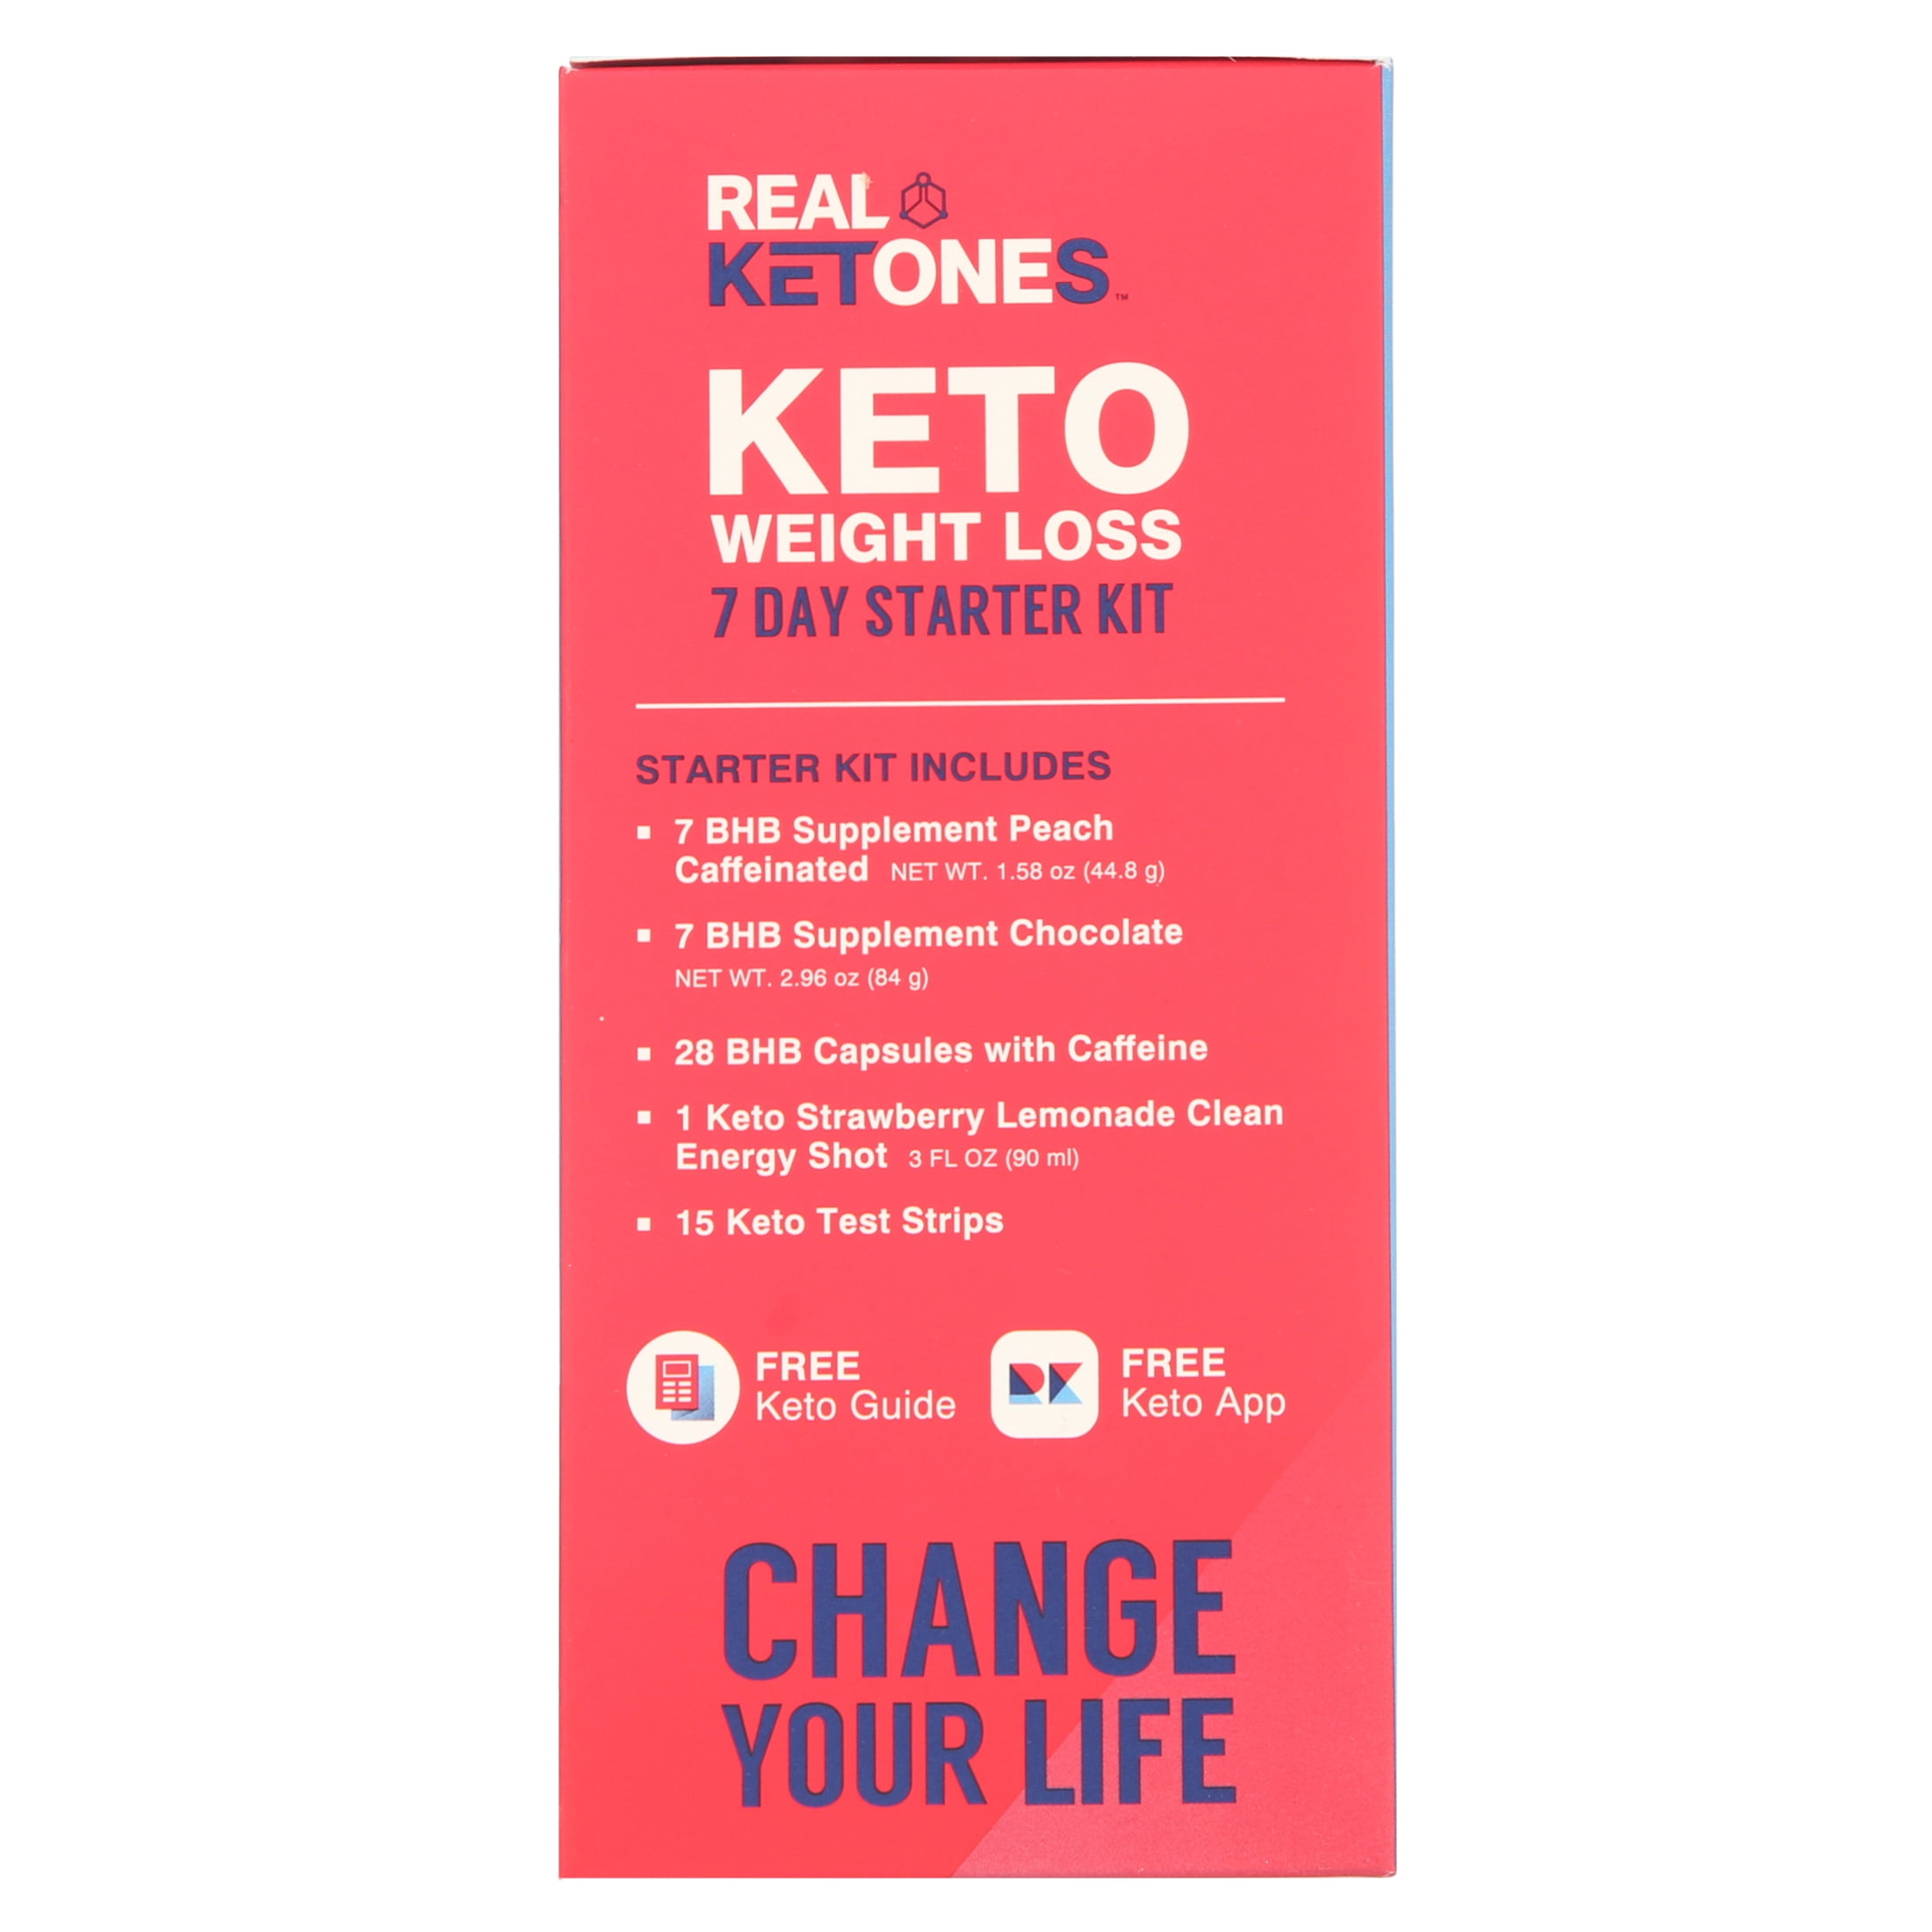 Keto Starter Kit Reviews